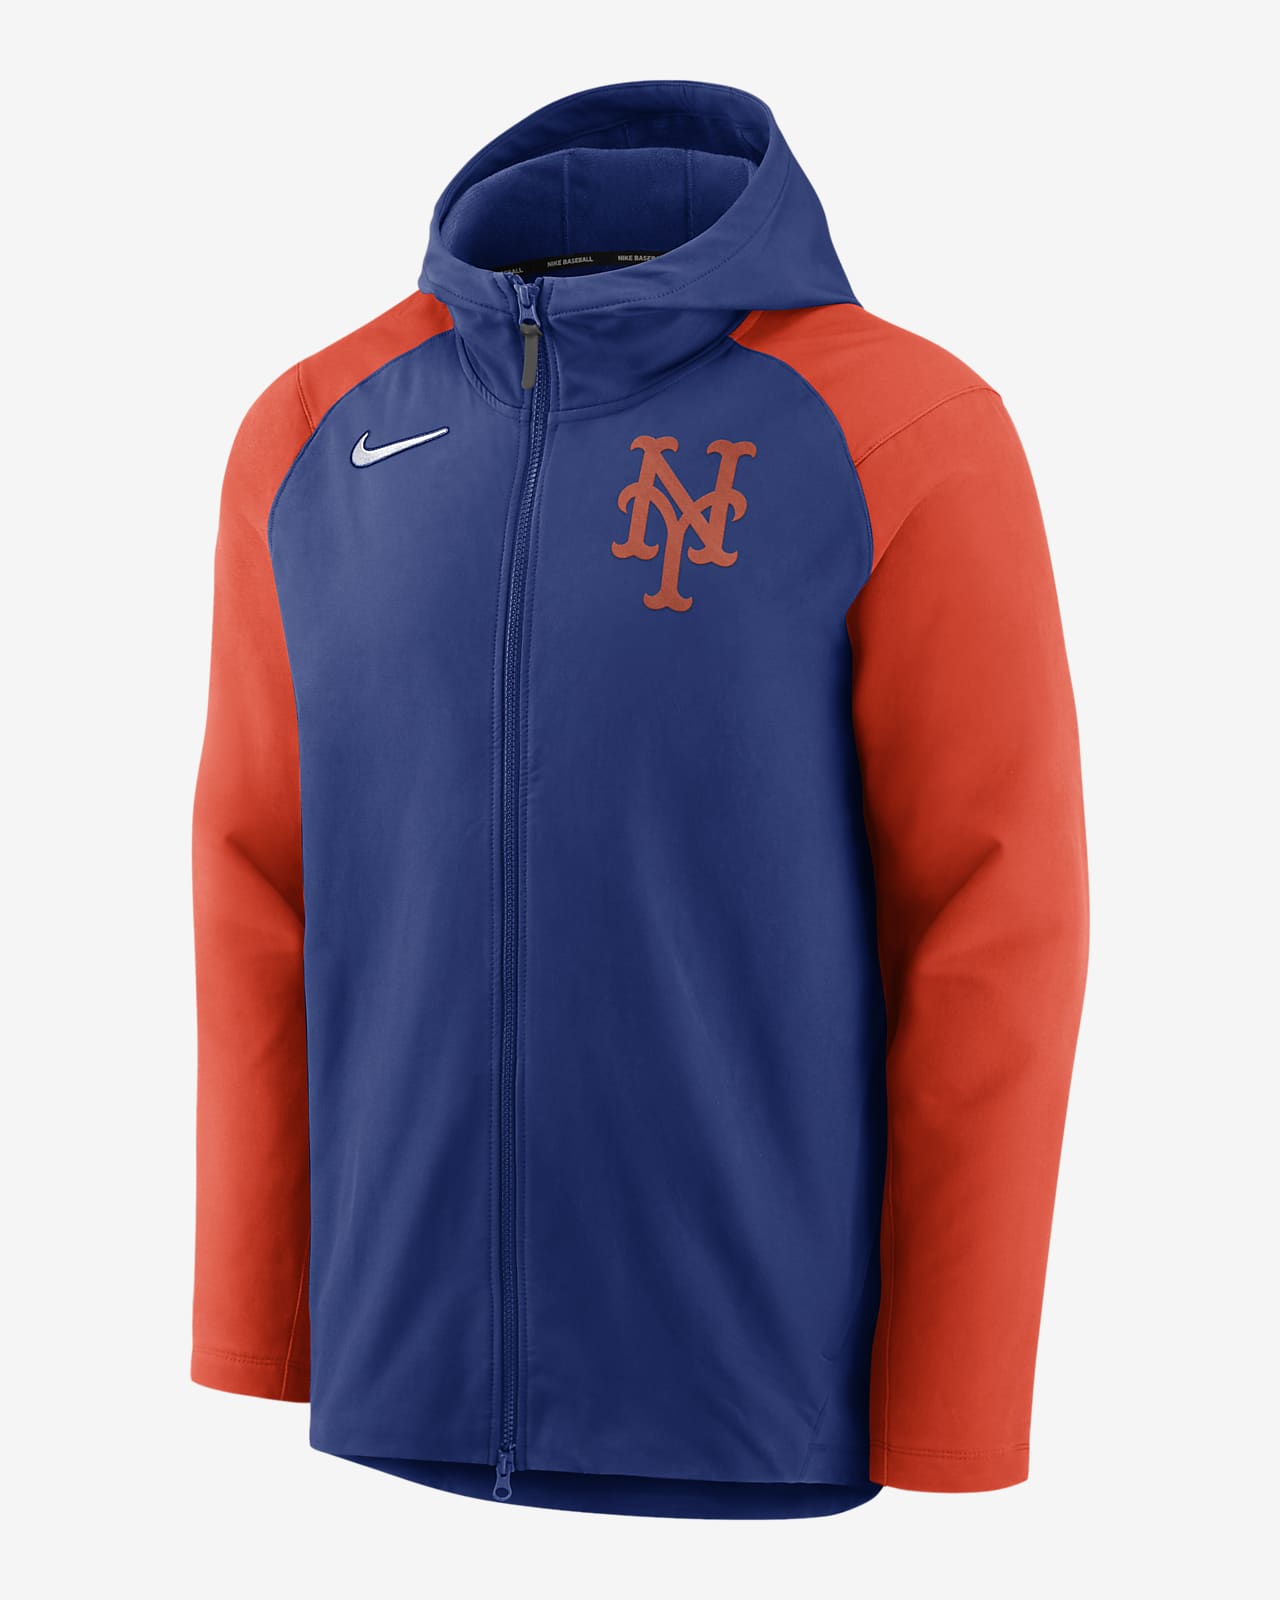 Nike Player (MLB New York Mets) Men's Full-Zip Jacket